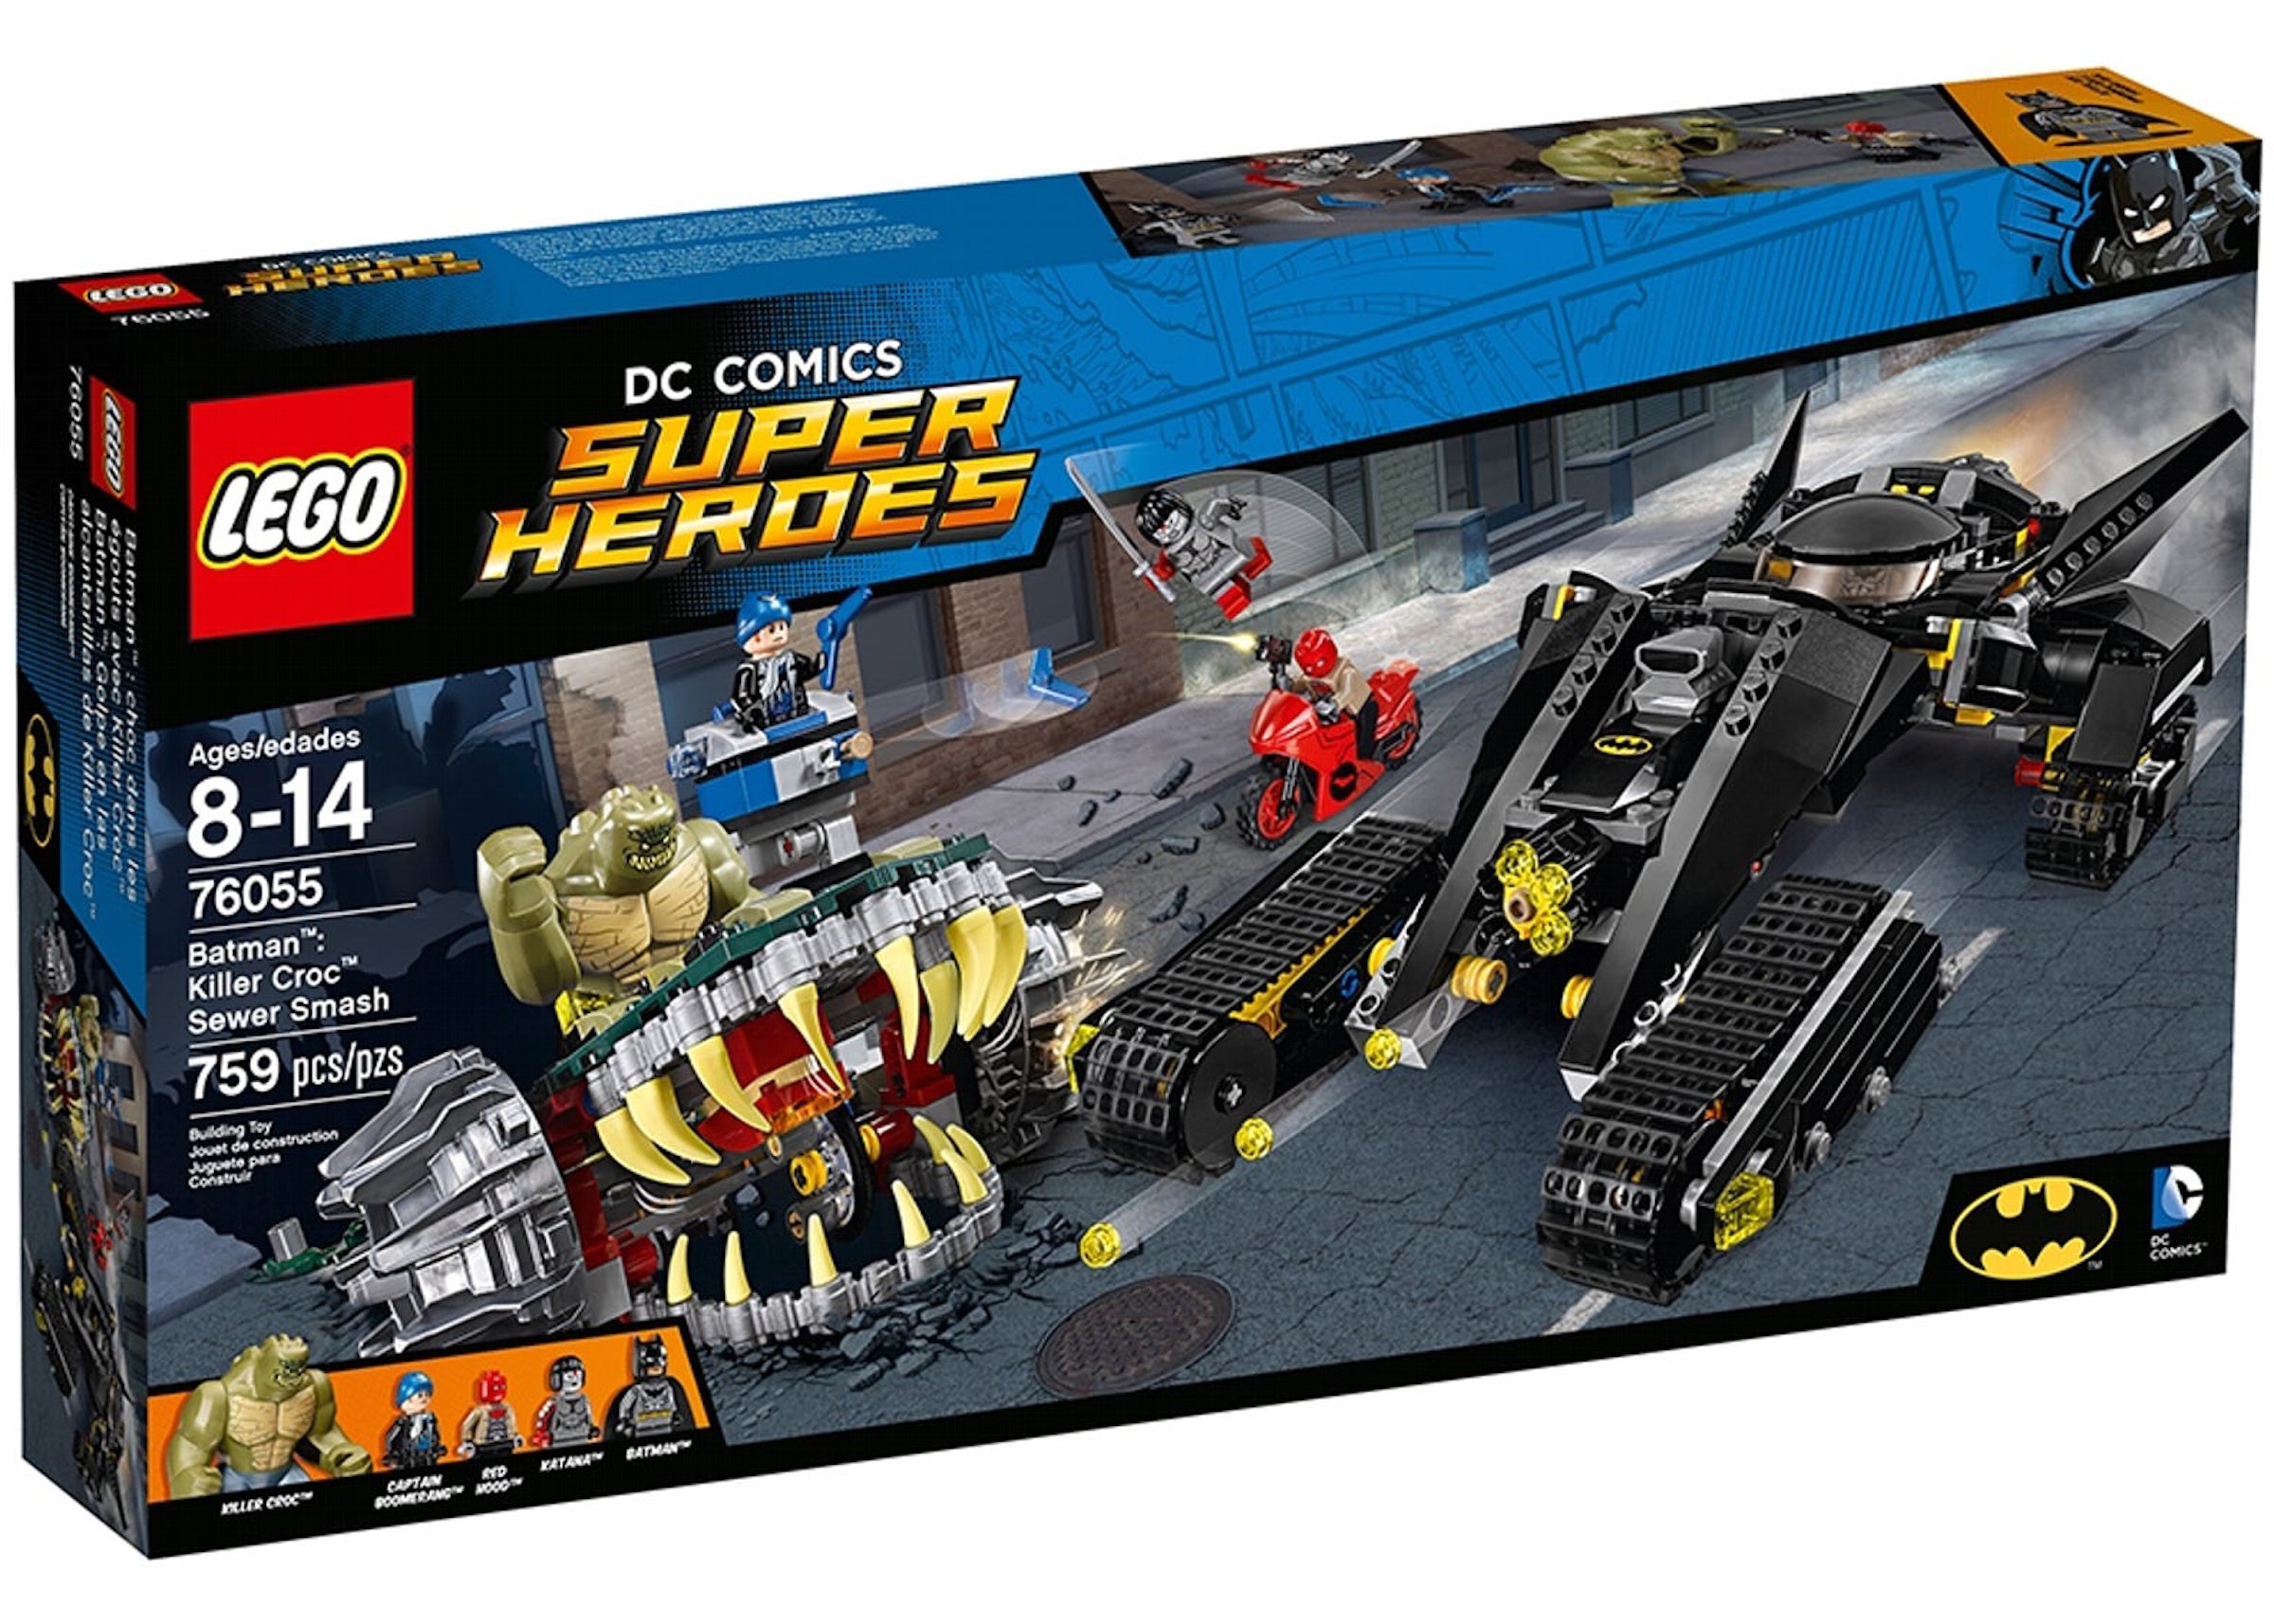 LEGO DC Comics Super Heroes Batman: Killer Cros Sewer Smash Set